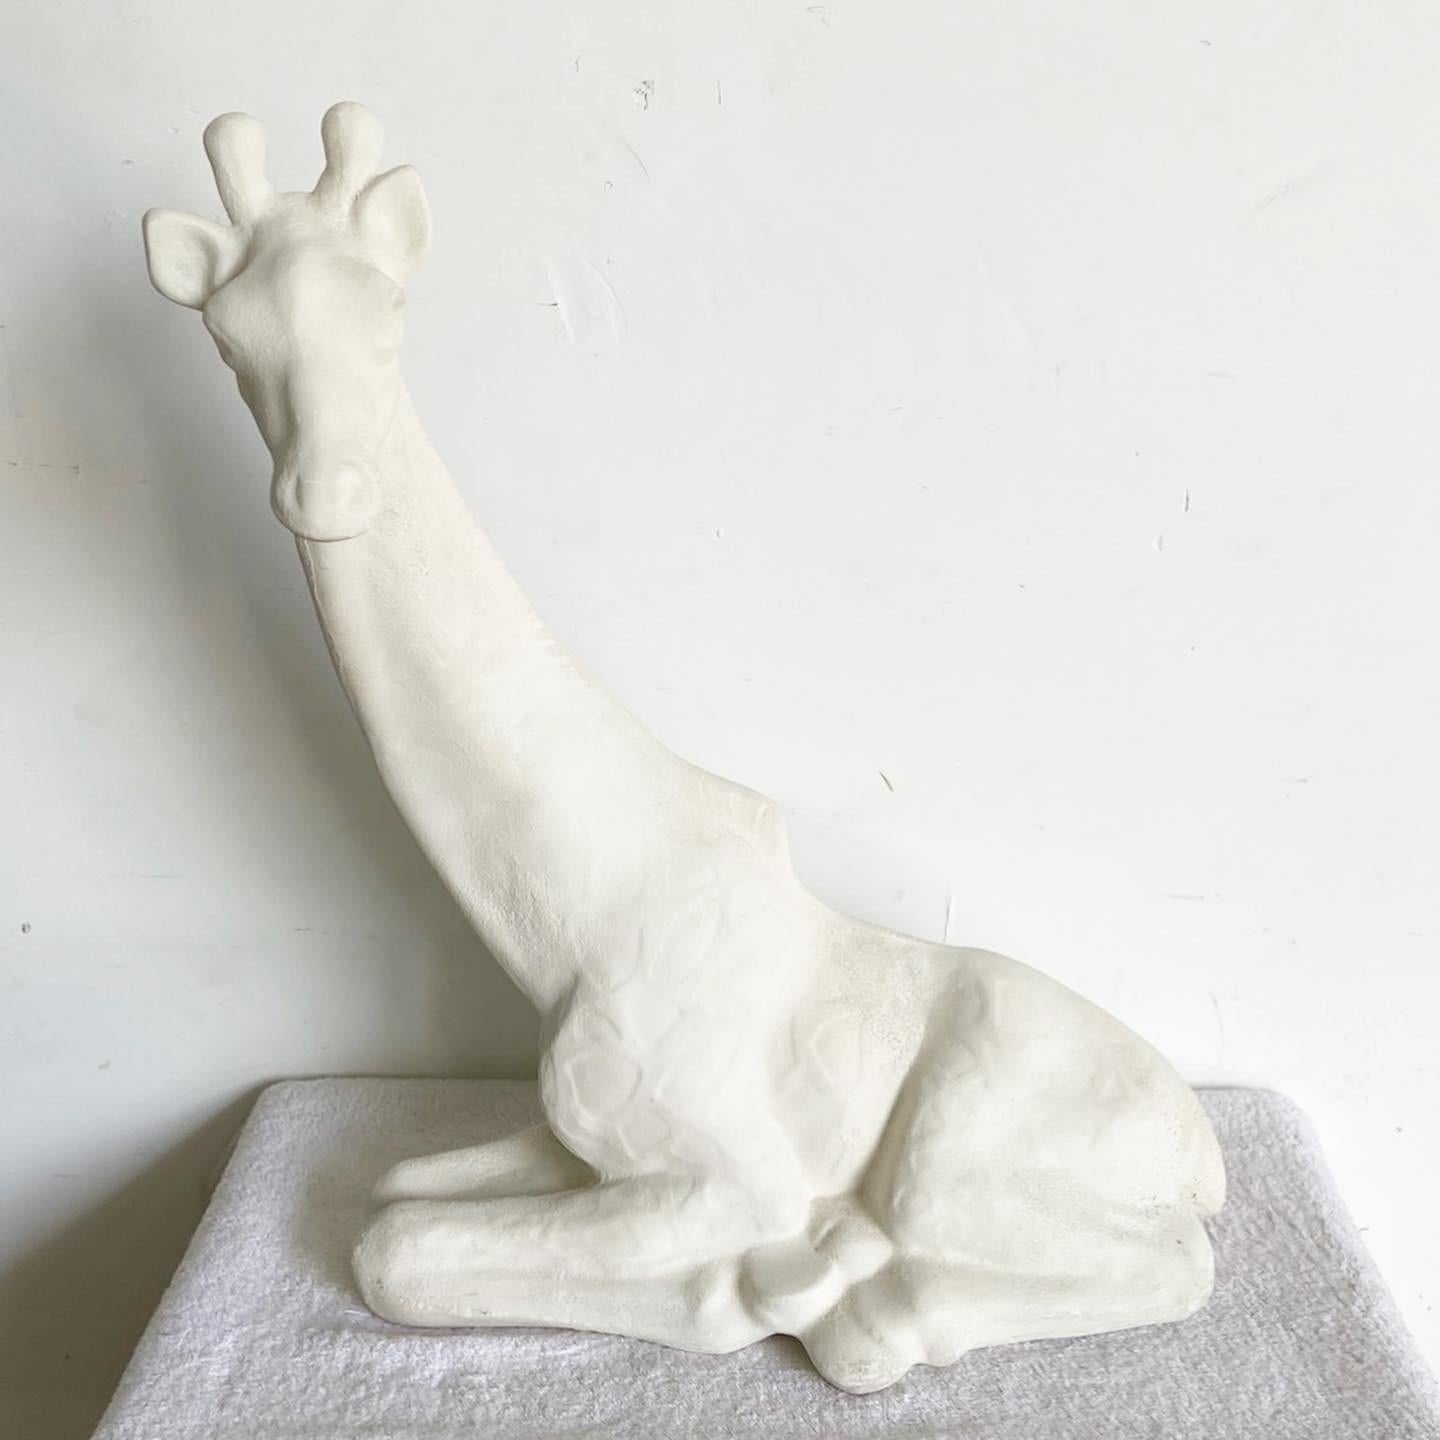 Peppen Sie Ihre Inneneinrichtung mit unserer einzigartigen postmodernen Vintage-Keramik-Giraffenskulptur auf. Diese mit Präzision gefertigte Skulptur in einem eleganten Off-White-Farbton ist ein fesselnder Mittelpunkt, der die Attraktivität jedes